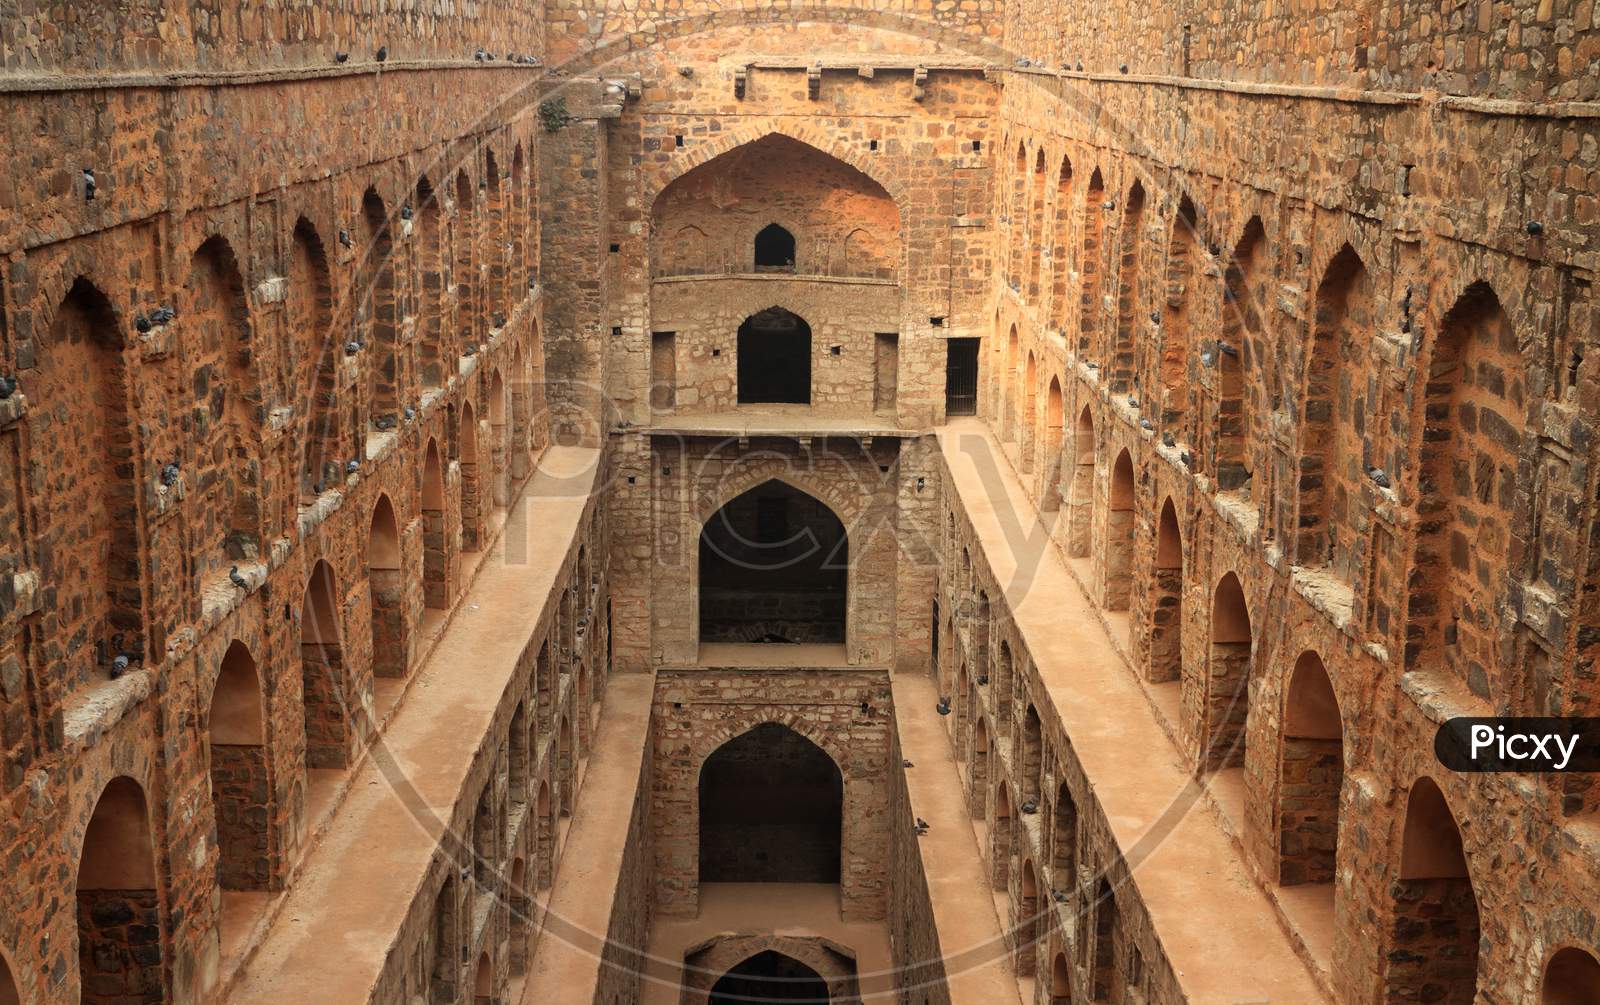 Agrasen Ki Baoli (Step Well), Ancient Construction, New Delhi, India